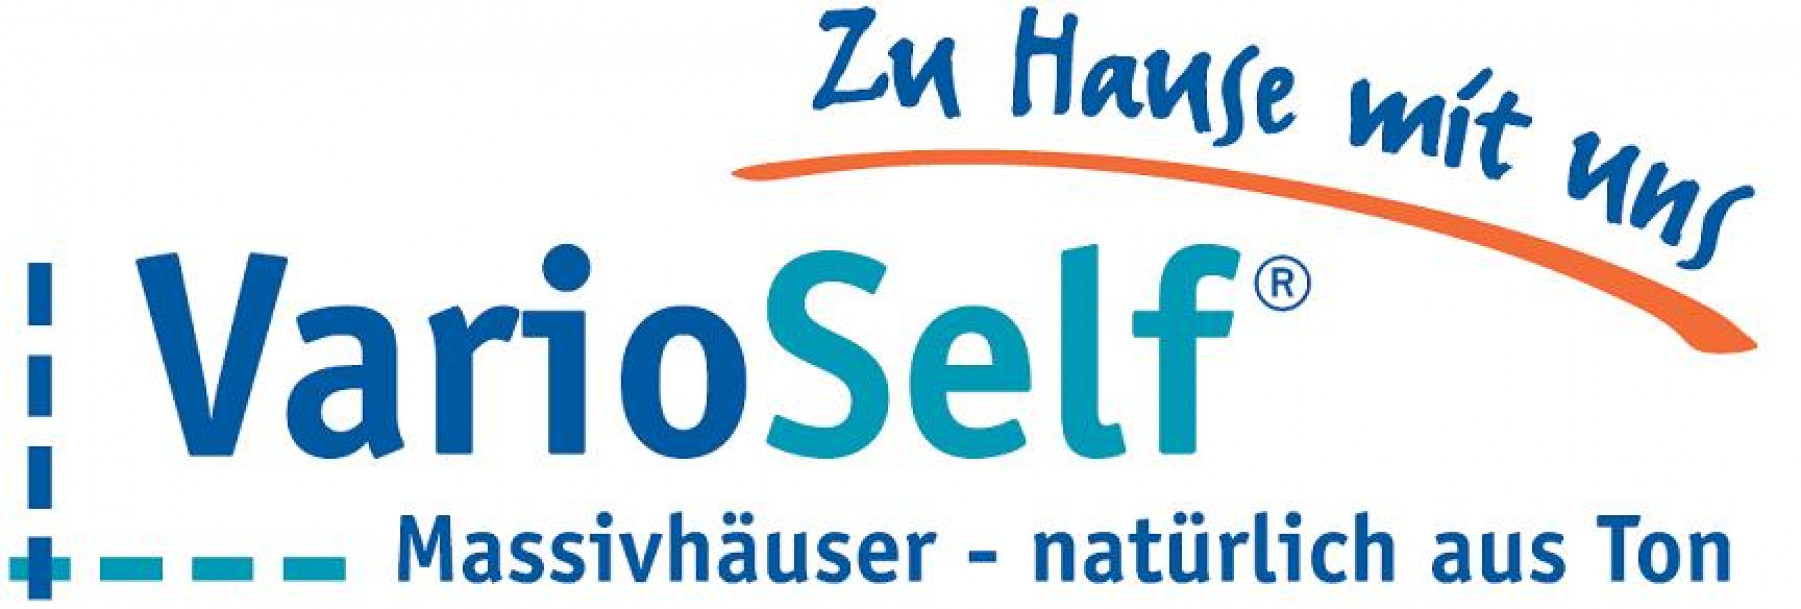 Bild Logo von: VarioSelf